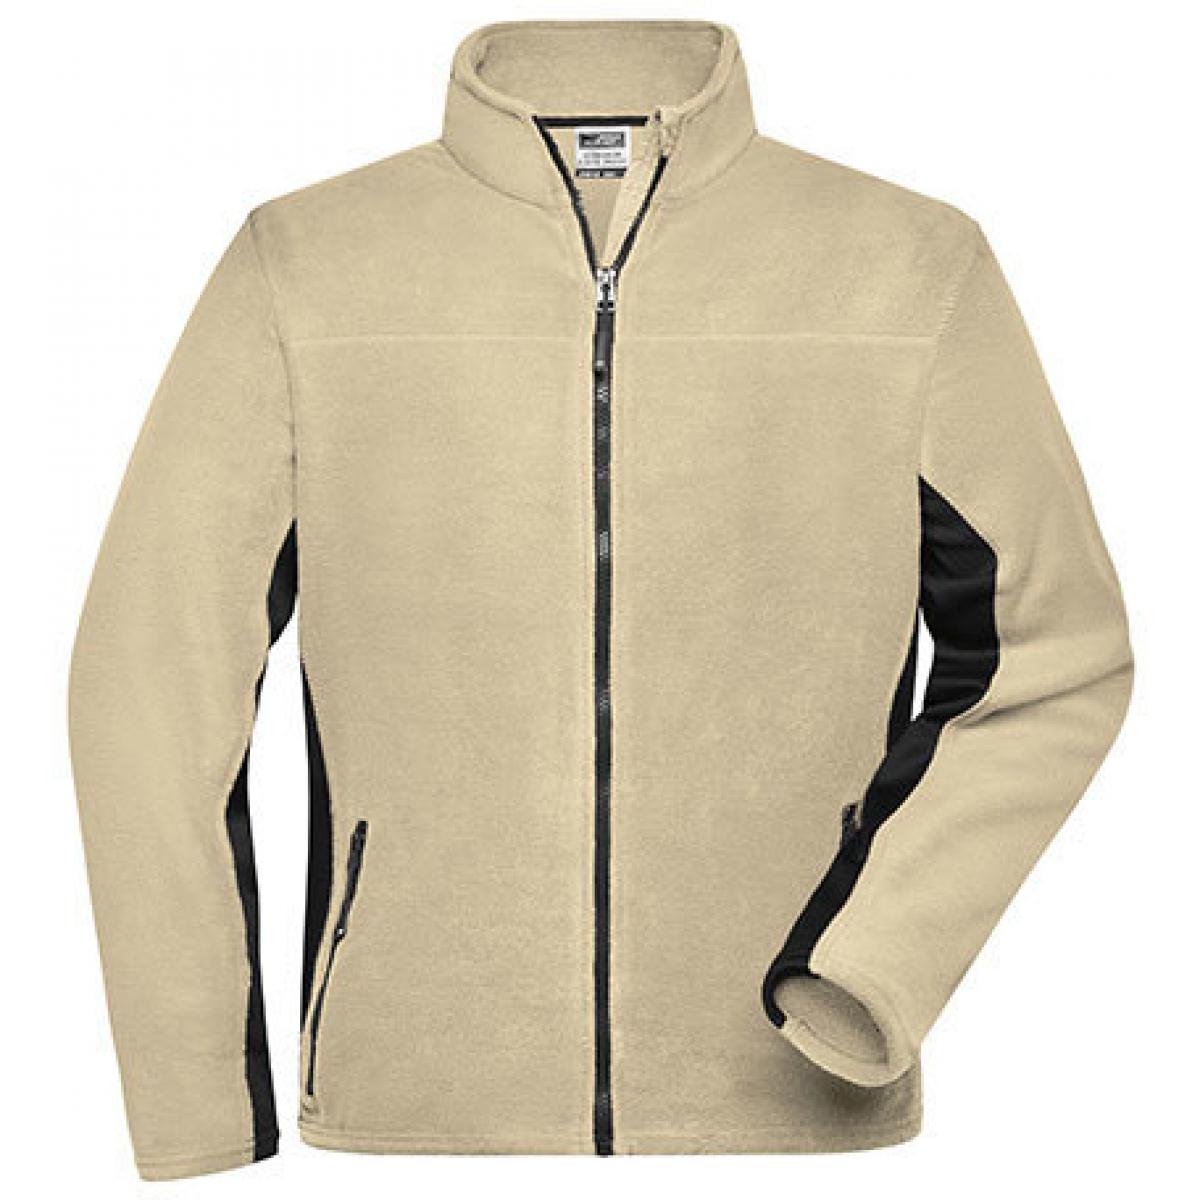 Hersteller: James+Nicholson Herstellernummer: JN842 Artikelbezeichnung: Herren Jacke, Men‘s Workwear Fleece Jacket -STRONG- Farbe: Stone/Black